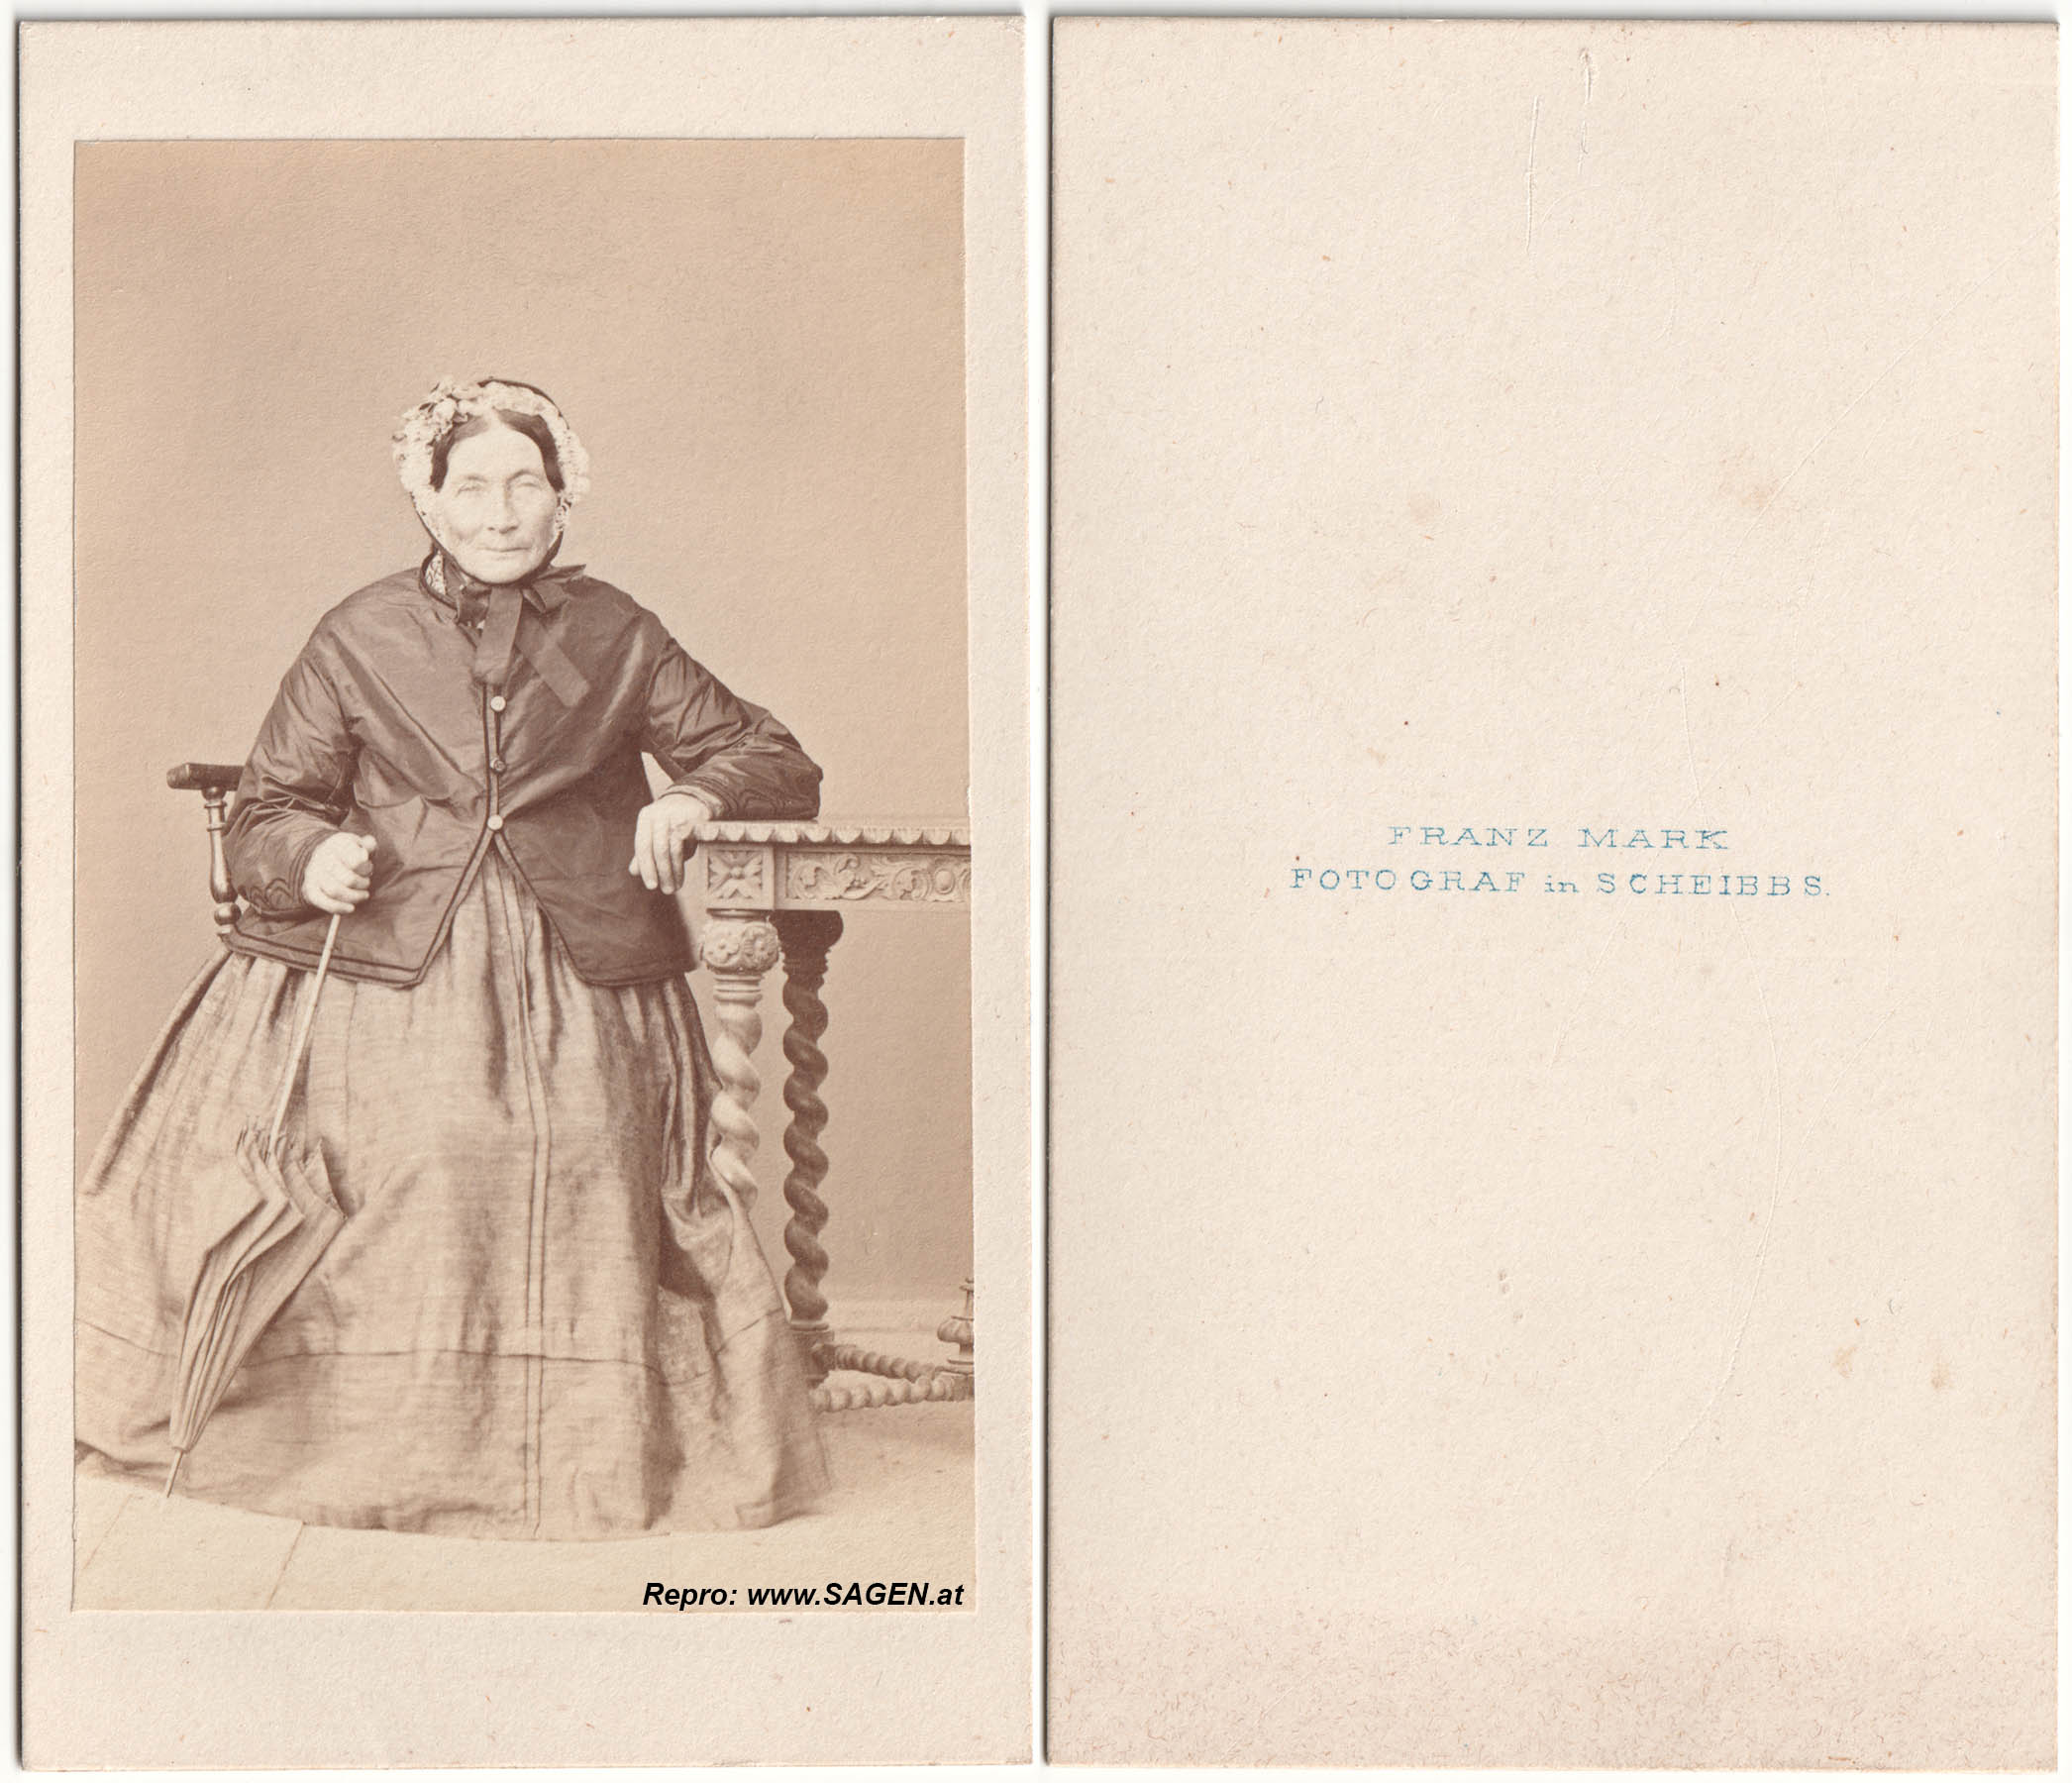 Porträt einer älteren Dame bei Fotograf Franz Mark in Scheibbs 1860er Jahre